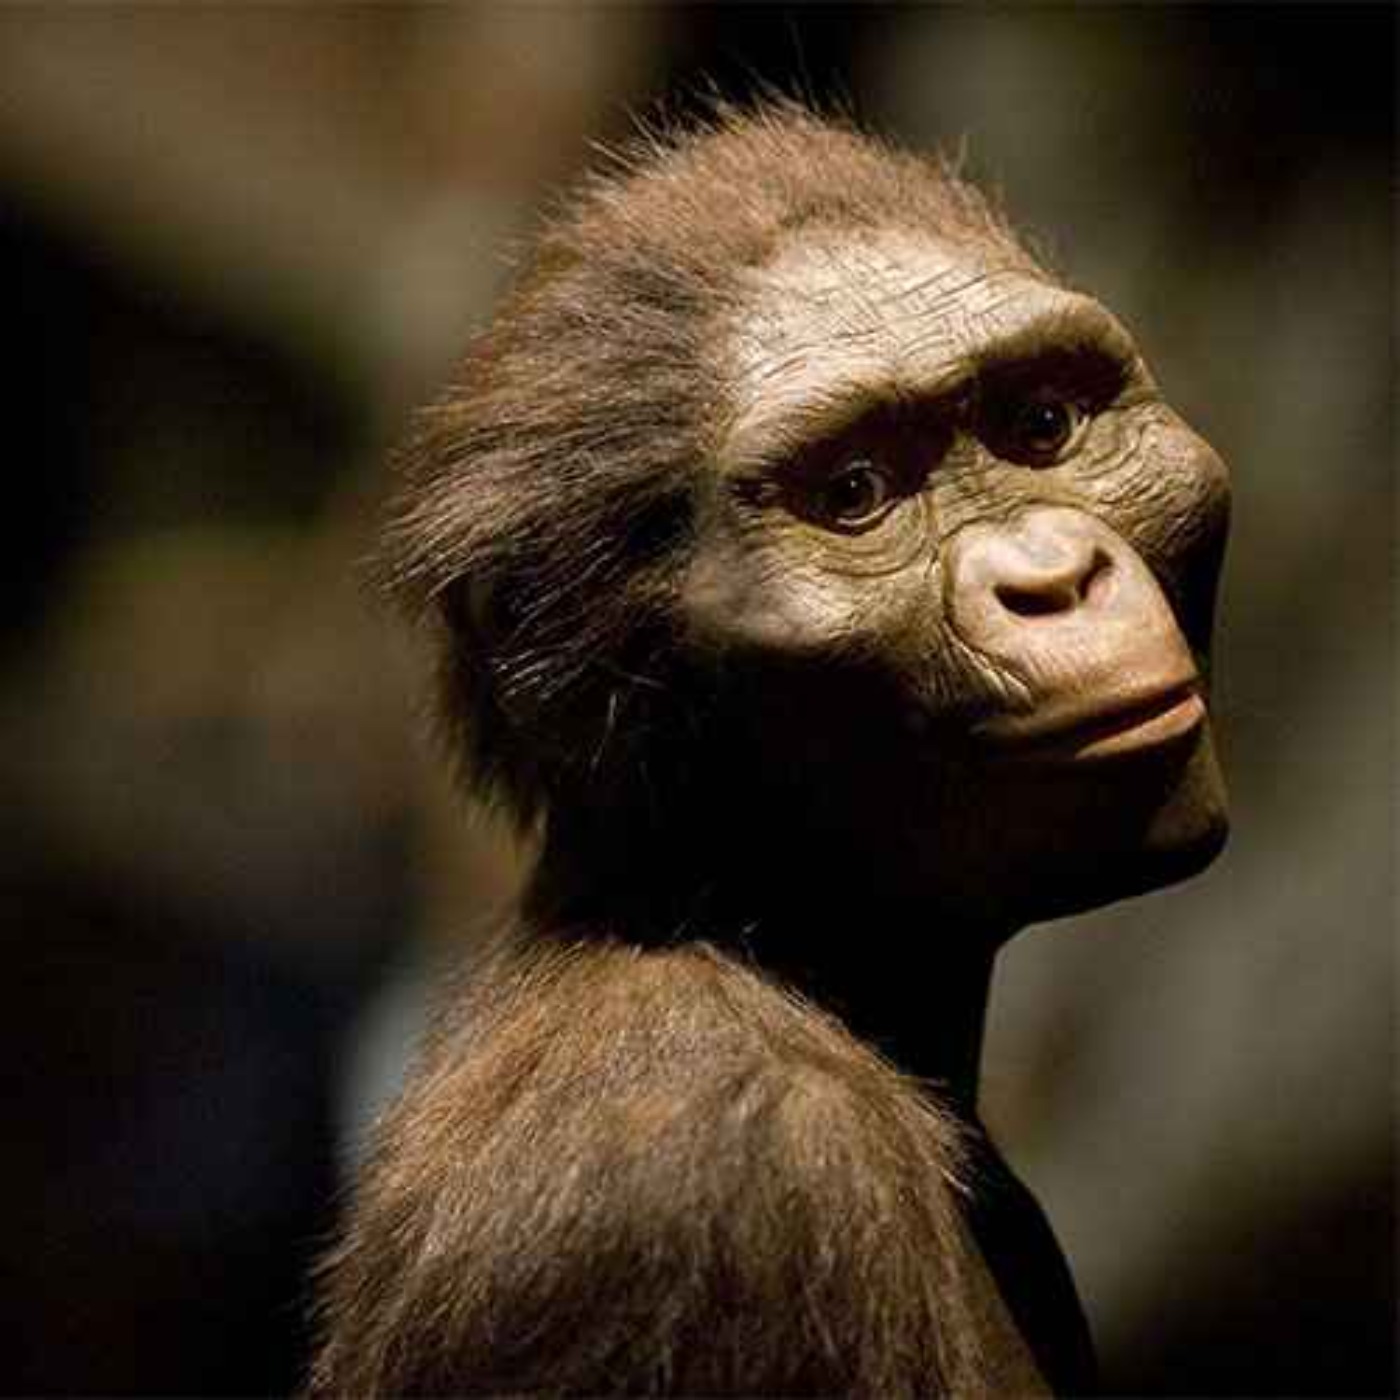 Australopithecus, the Southern Ape